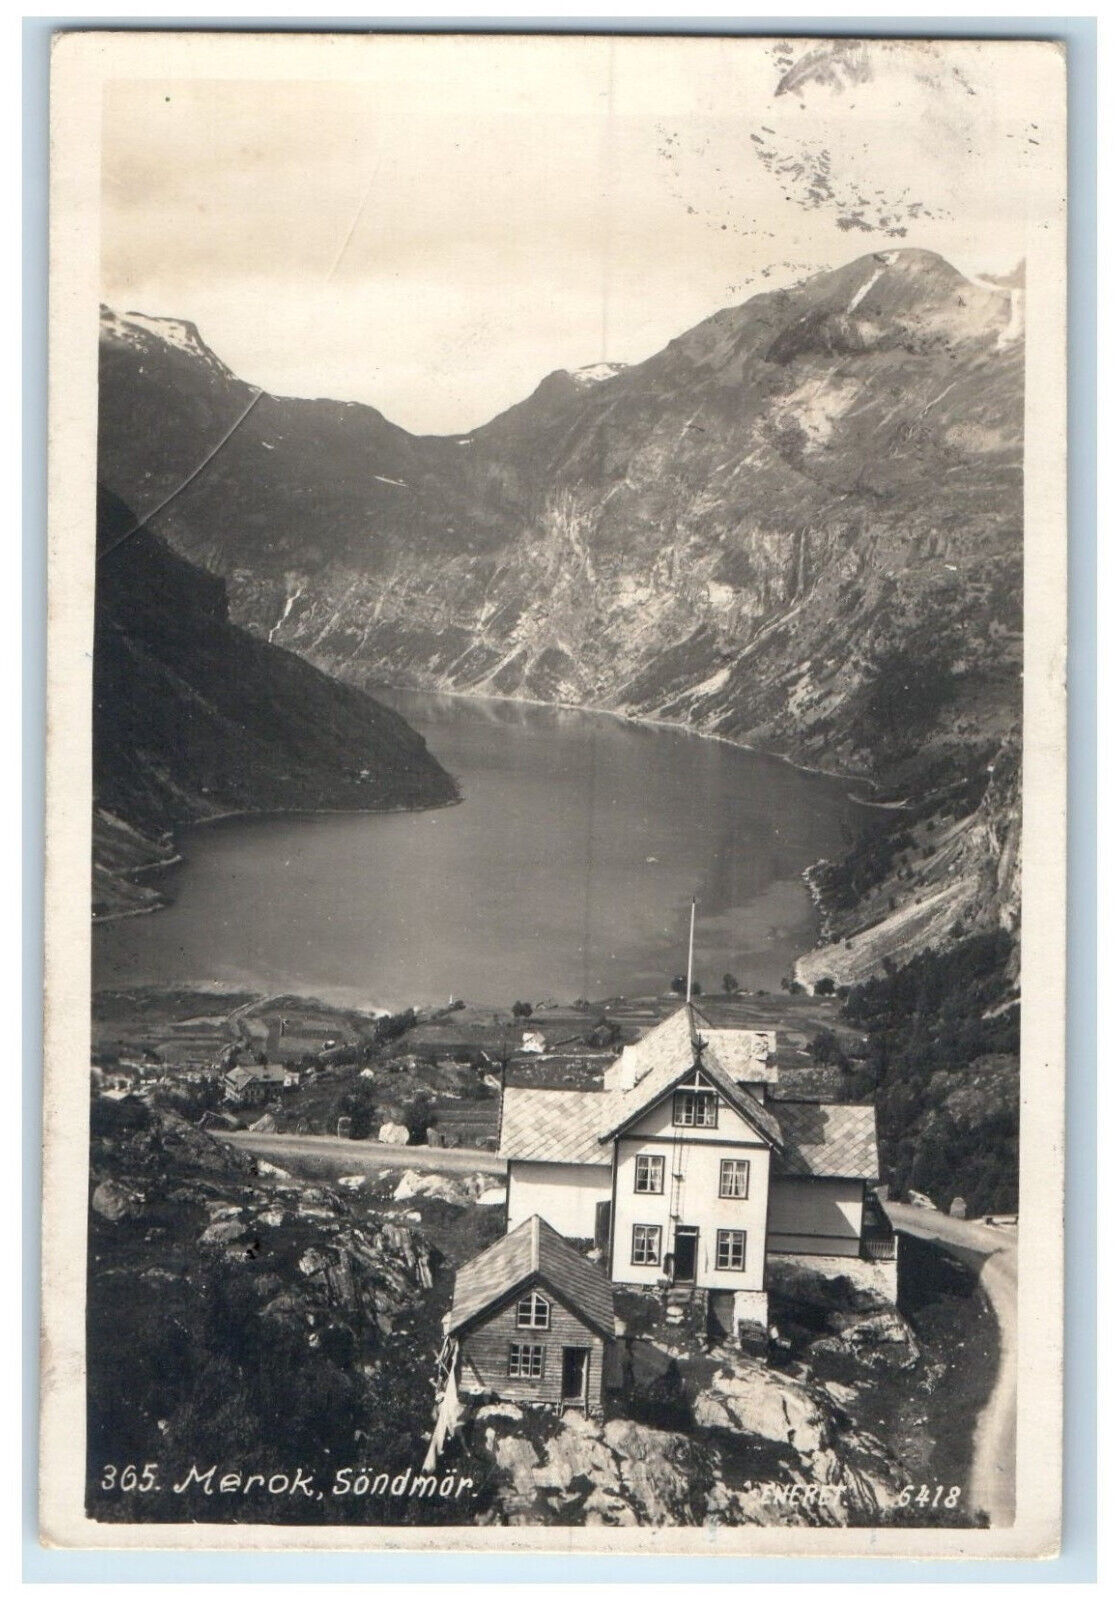 1926 River Mountain View at Sondmor Merok Norway Postage Due RPPC Photo Postcard